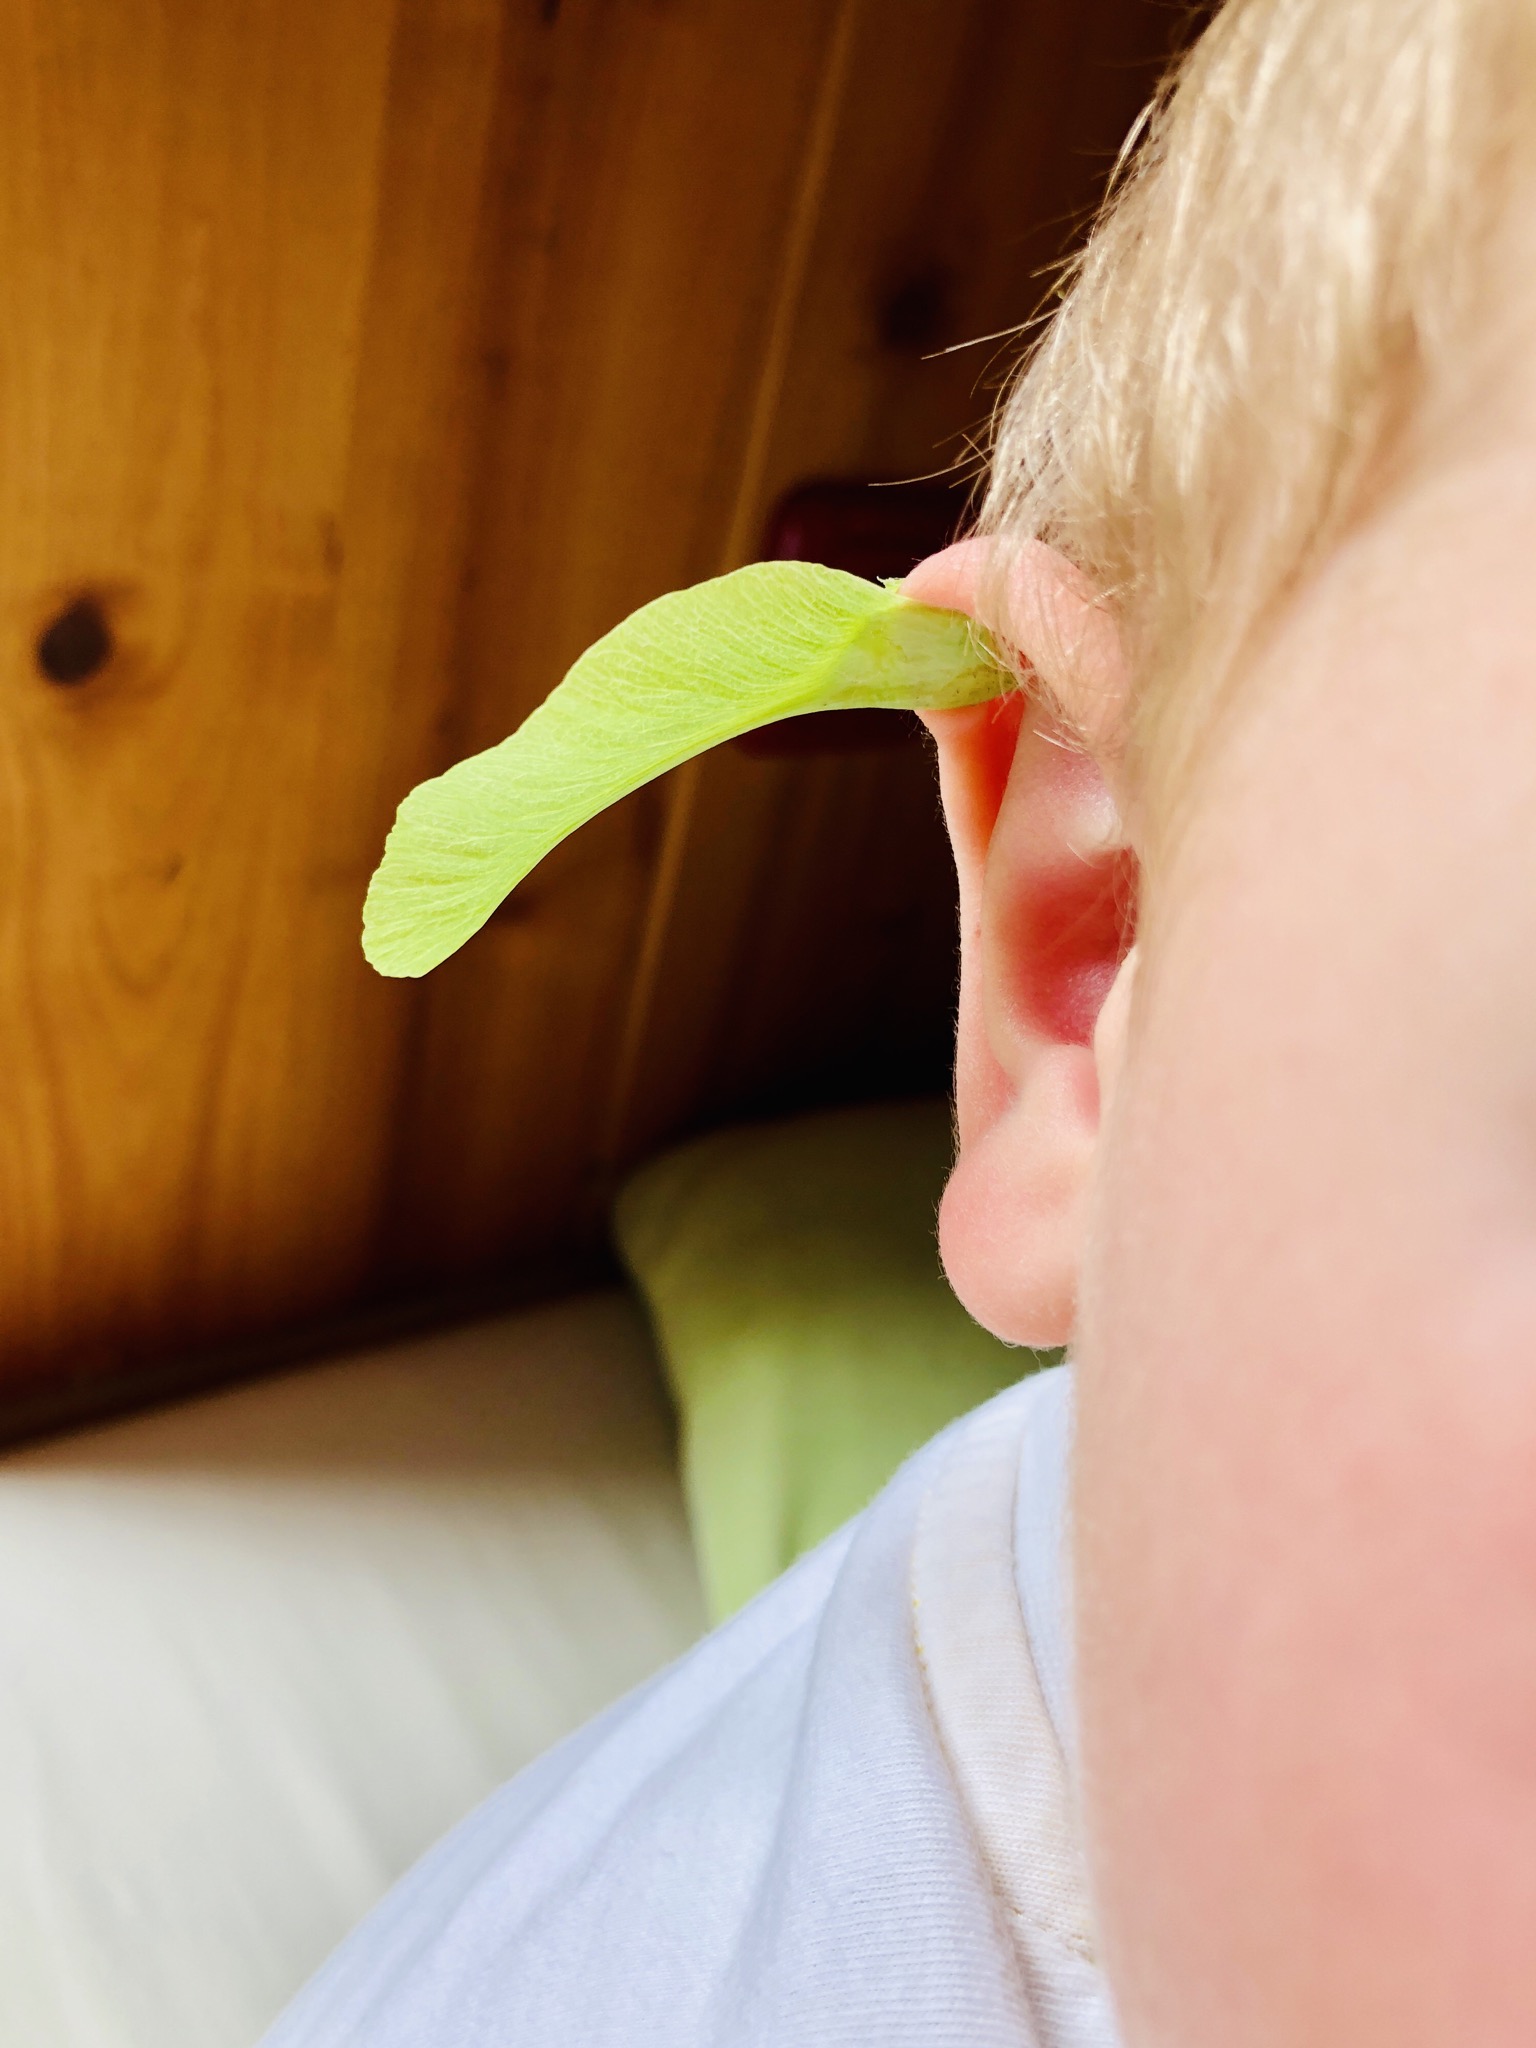 Bild zum Schritt 7 für die Kinder-Beschäftigung: 'Eine lustige Idee ist auch die Befestigung am Ohr! ...'